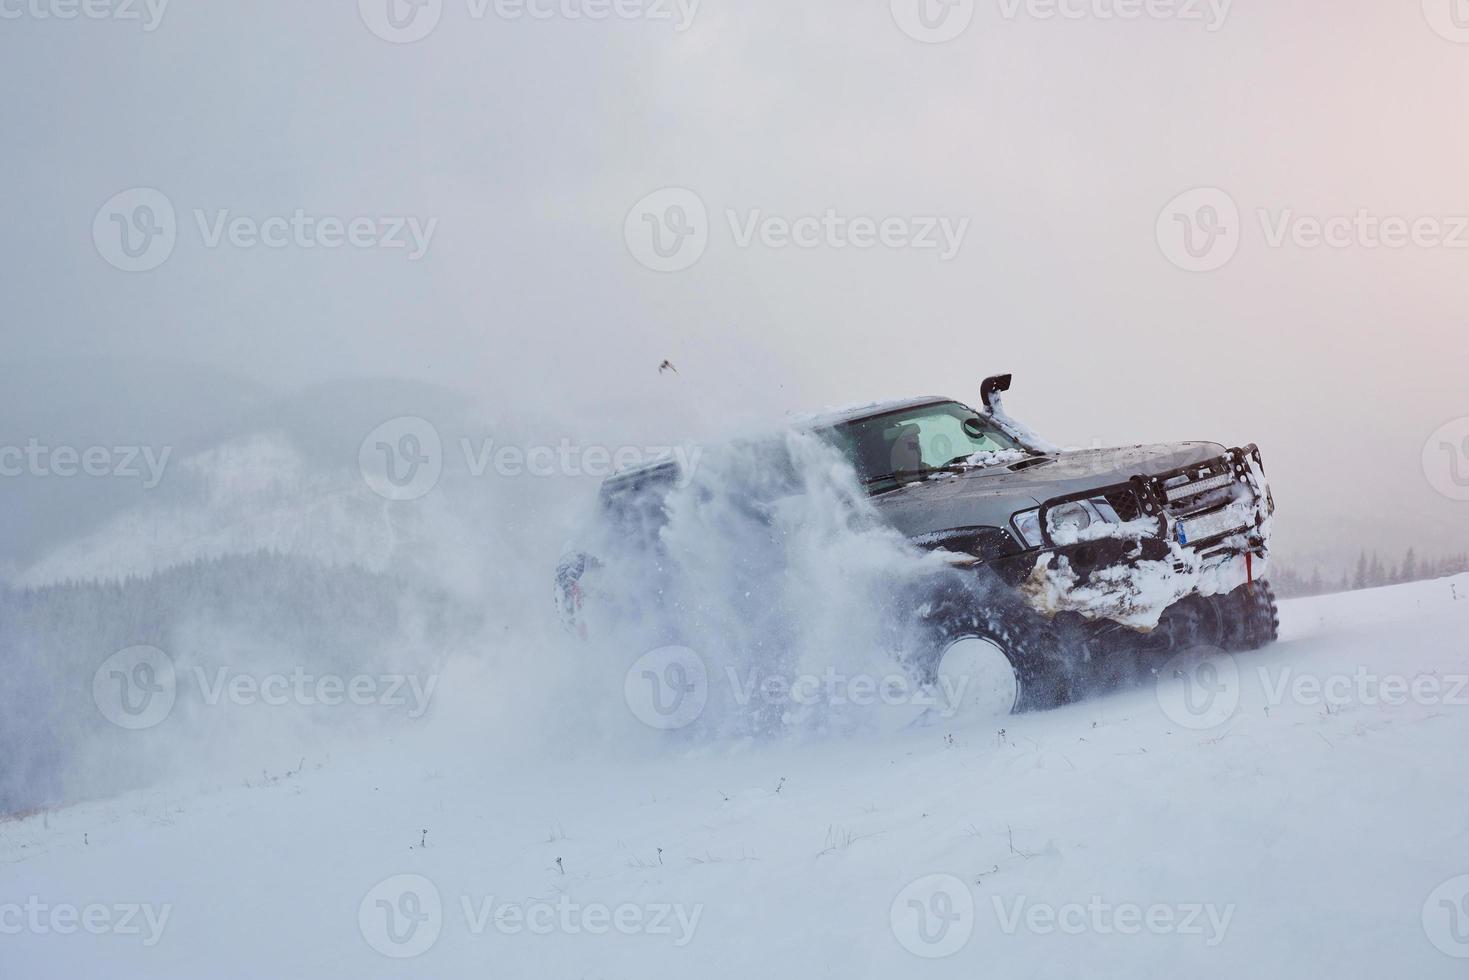 suv rijdt op een winterse berg met risico op sneeuw en ijs, drifting foto